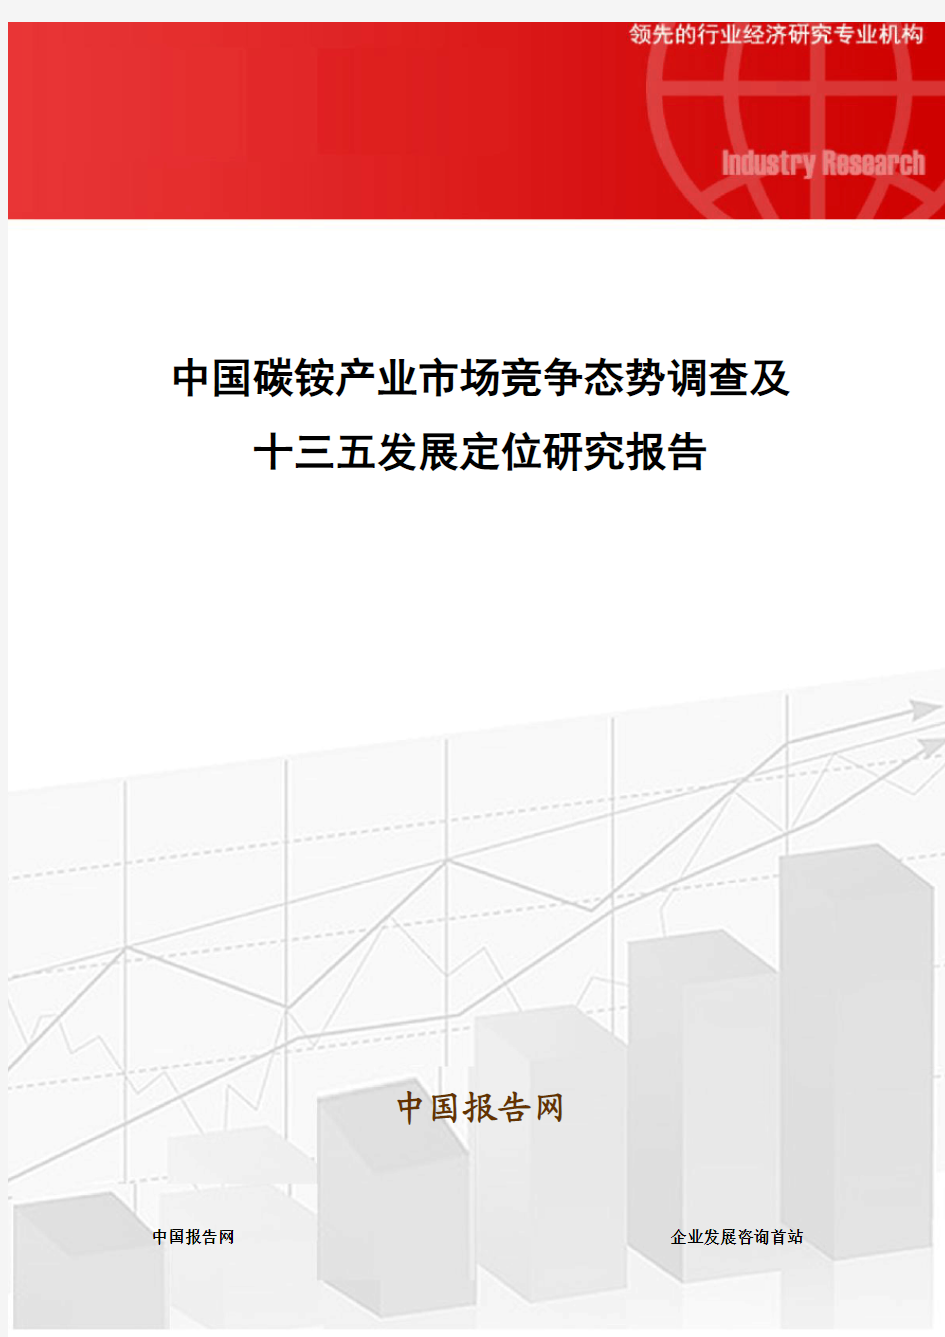 中国碳铵产业市场竞争态势调查及十三五发展定位研究报告